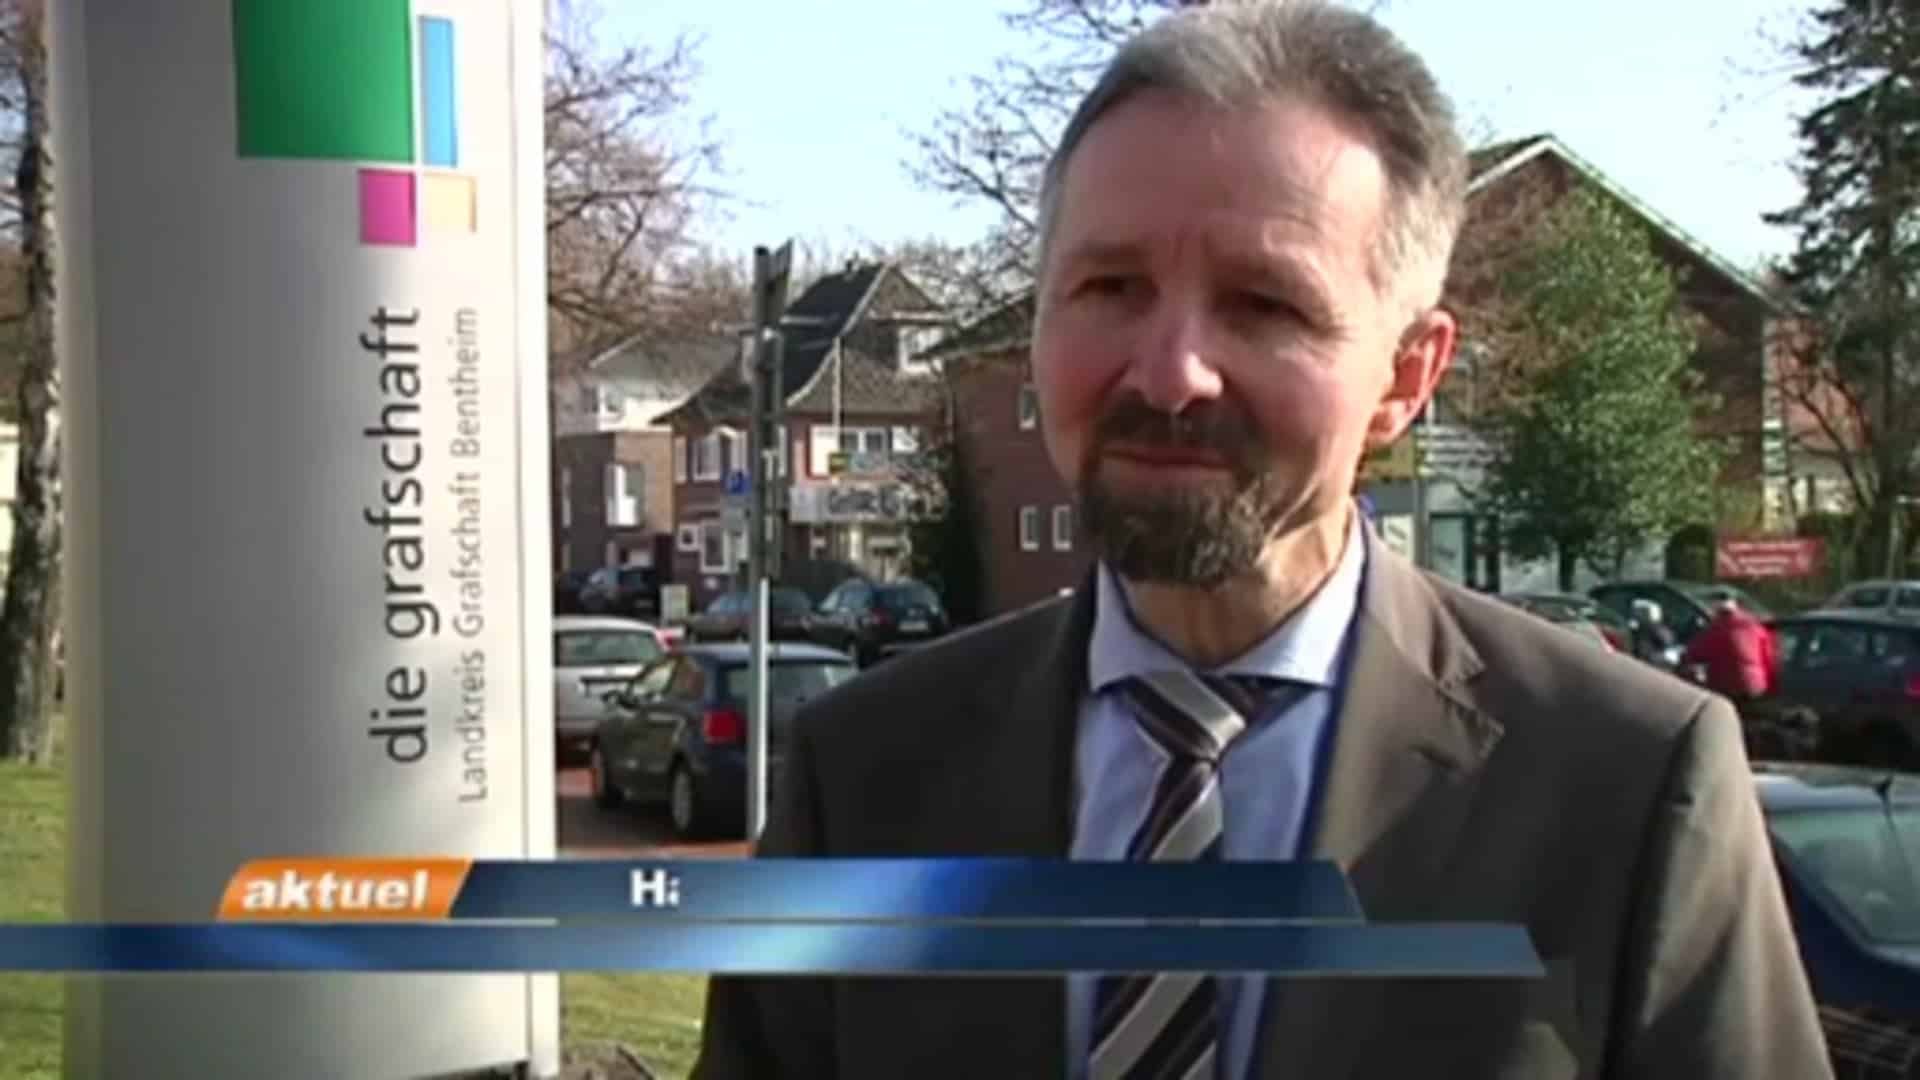 Vogelgrippe Erster Kreisrat Hans Werner Schwarz im Interview